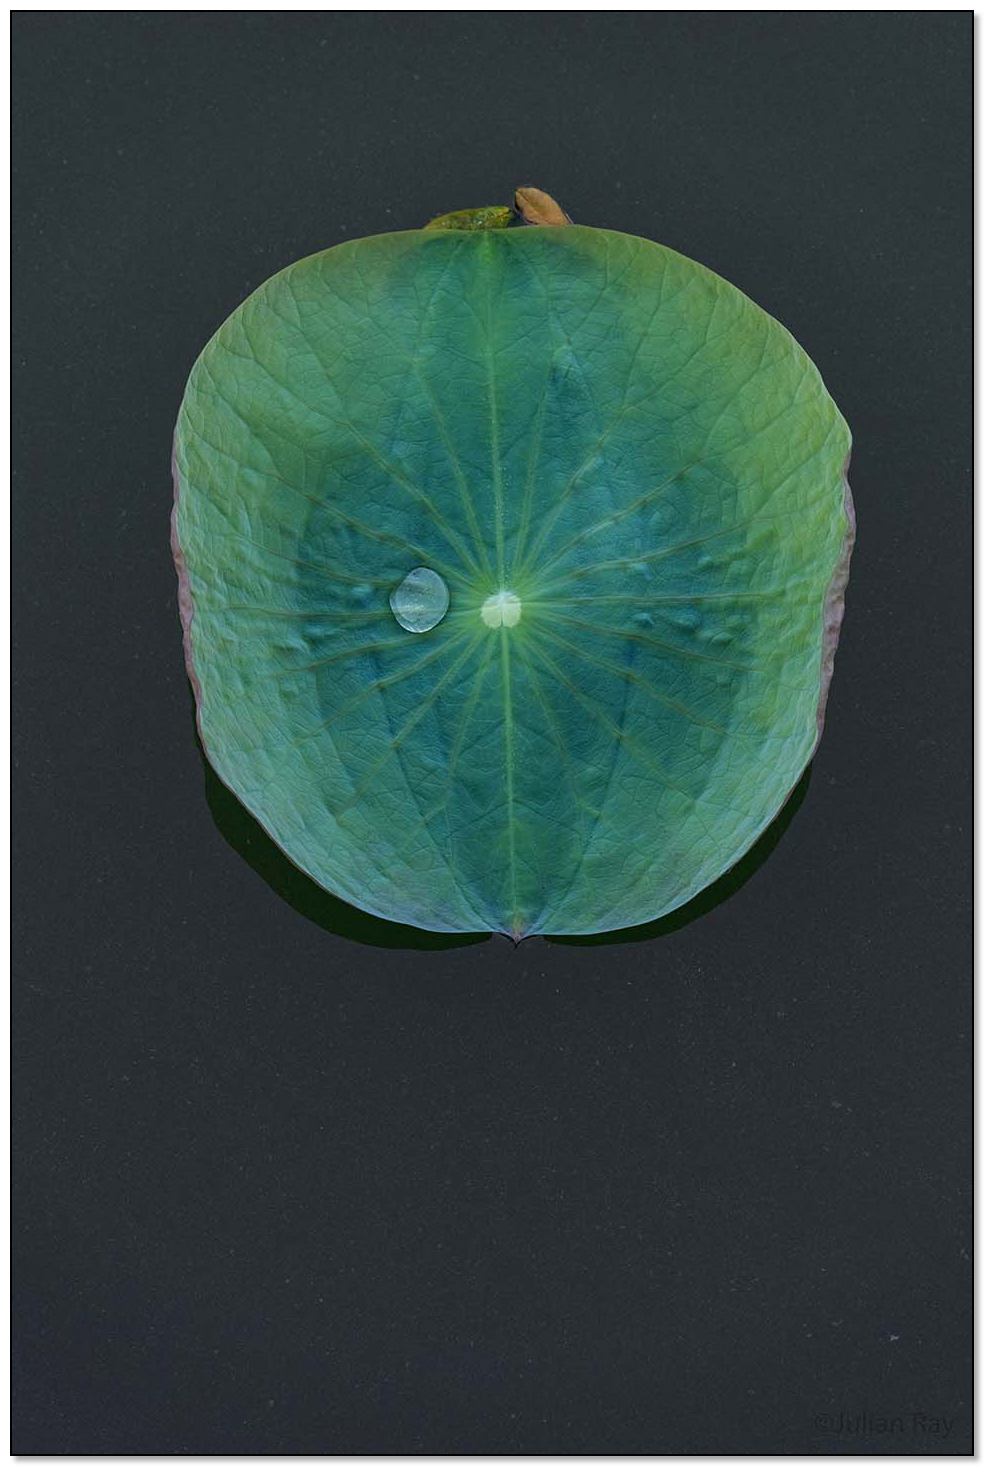 Water drop on a lotus leaf